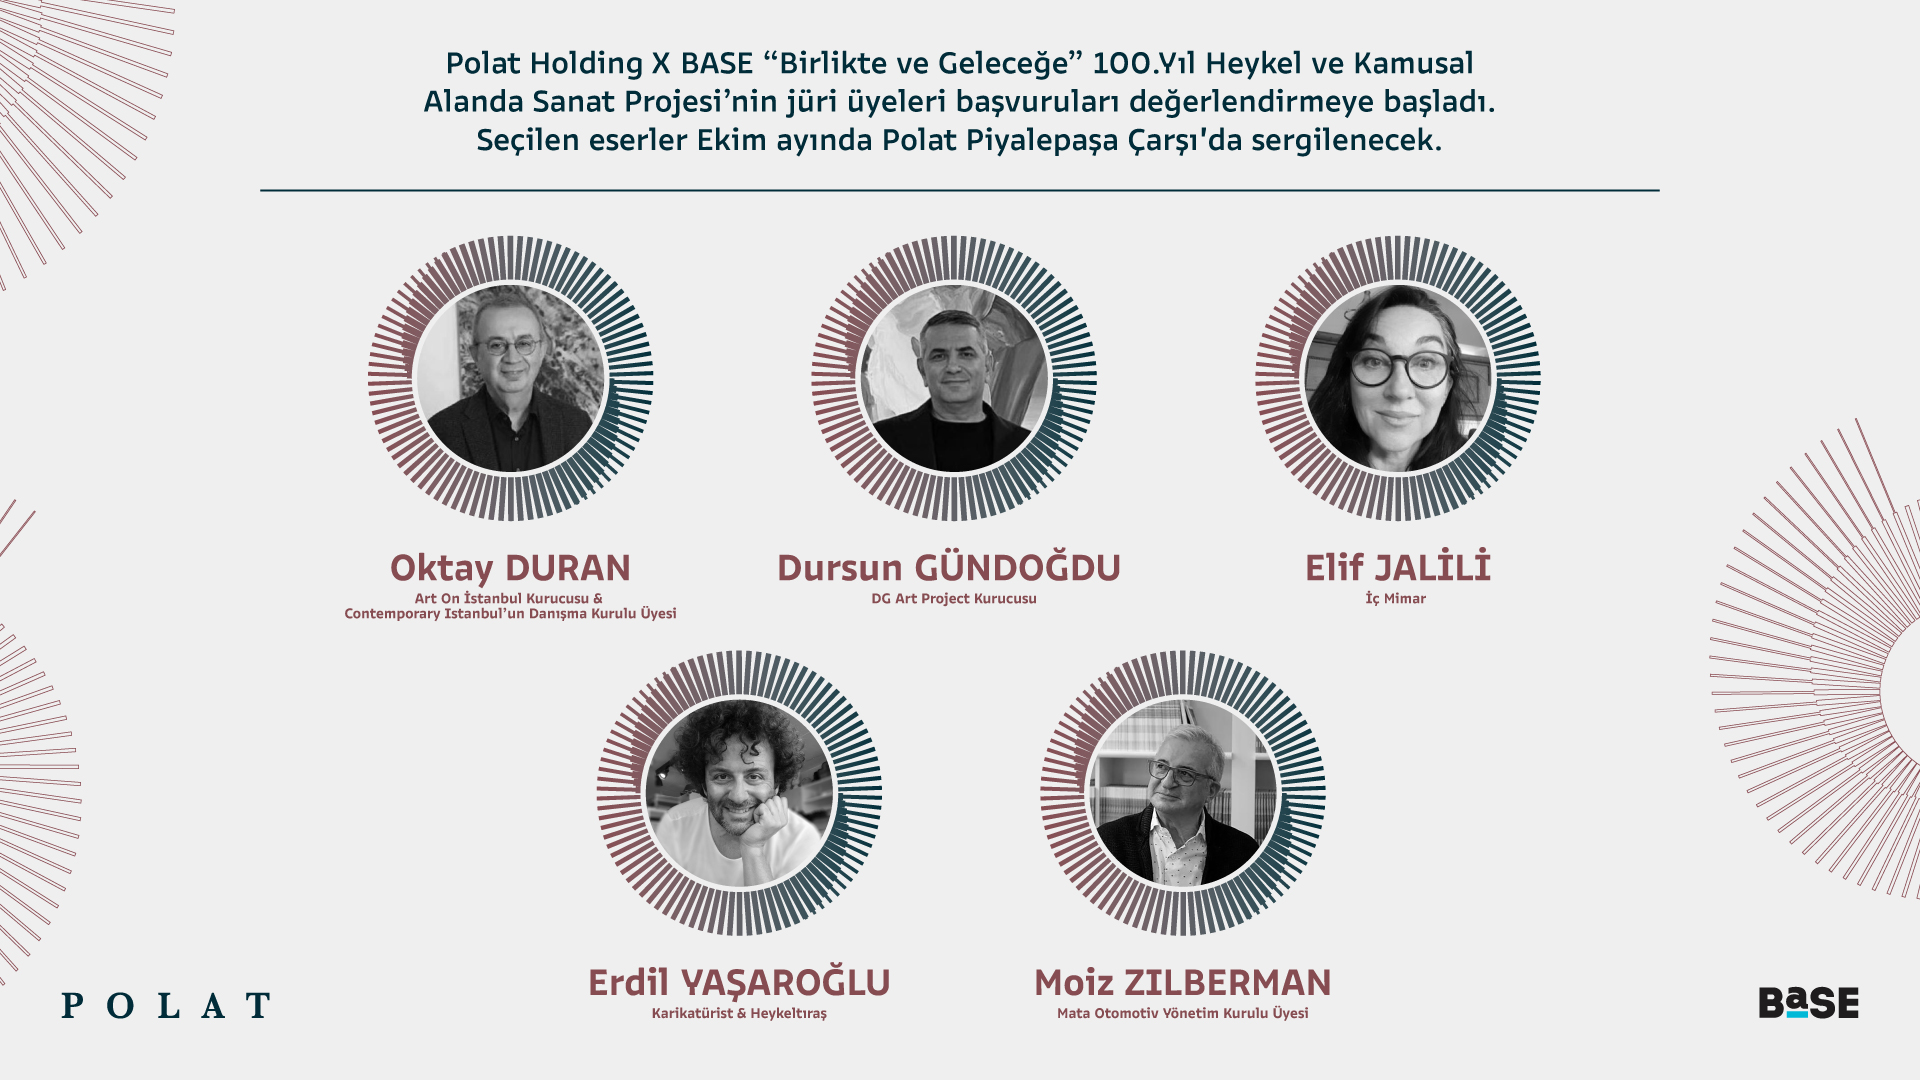 Polat Holding X BASE “Birlikte ve Geleceğe” 100.Yıl Heykel ve Kamusal Alanda Sanat Projesi’nin jüri üyeleri başvuruları değerlendirmeye başladı.